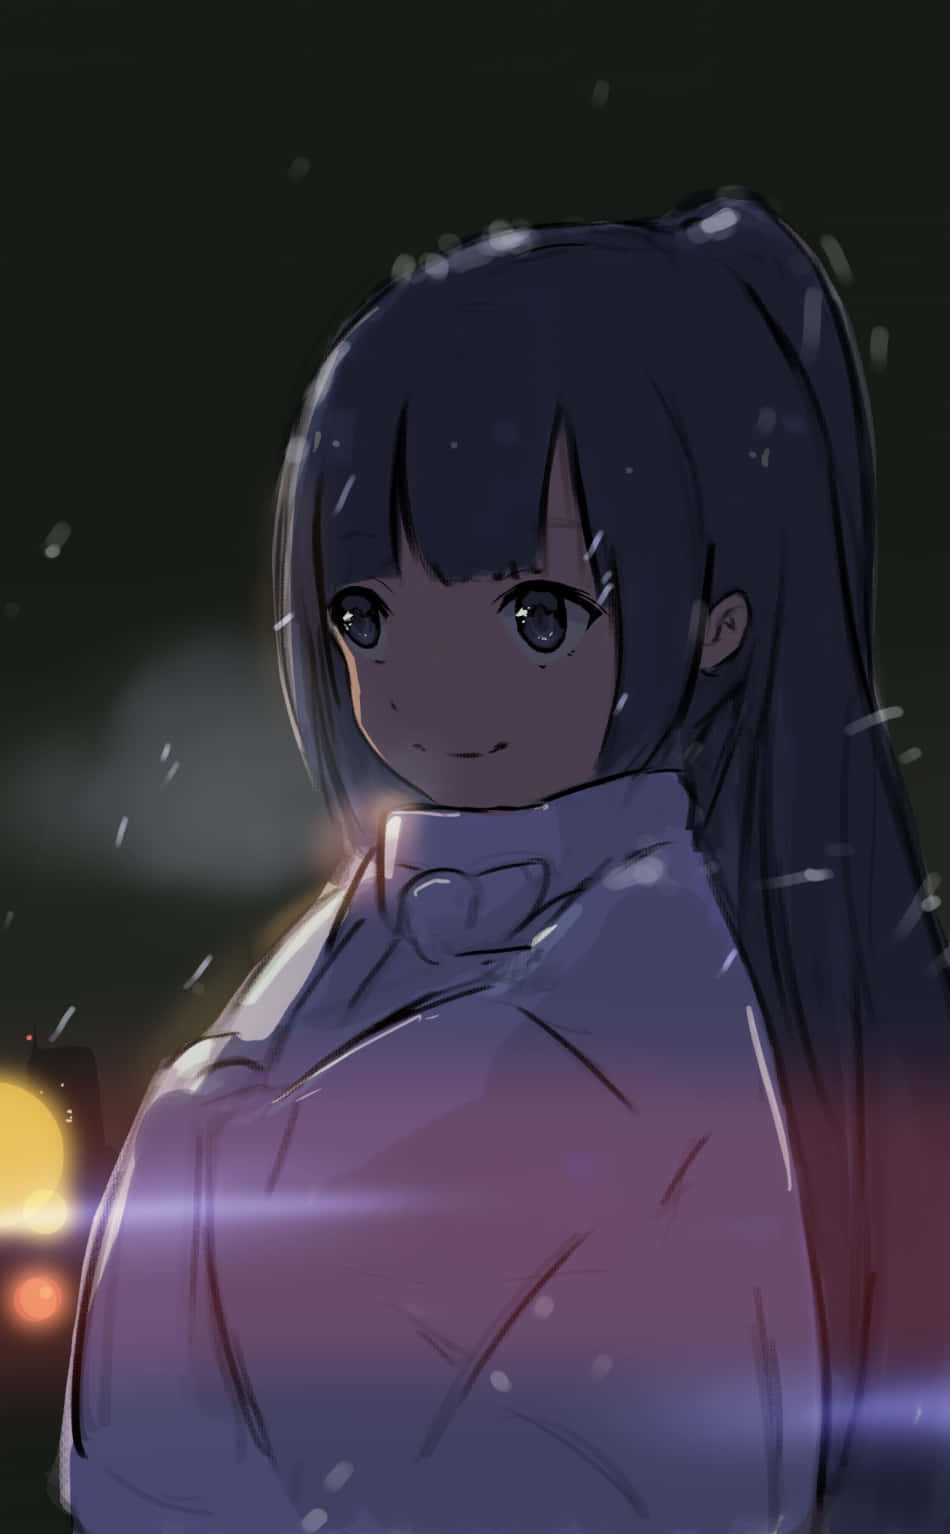 Sort Anime pige står mod en nattehimmel med månelys. Wallpaper